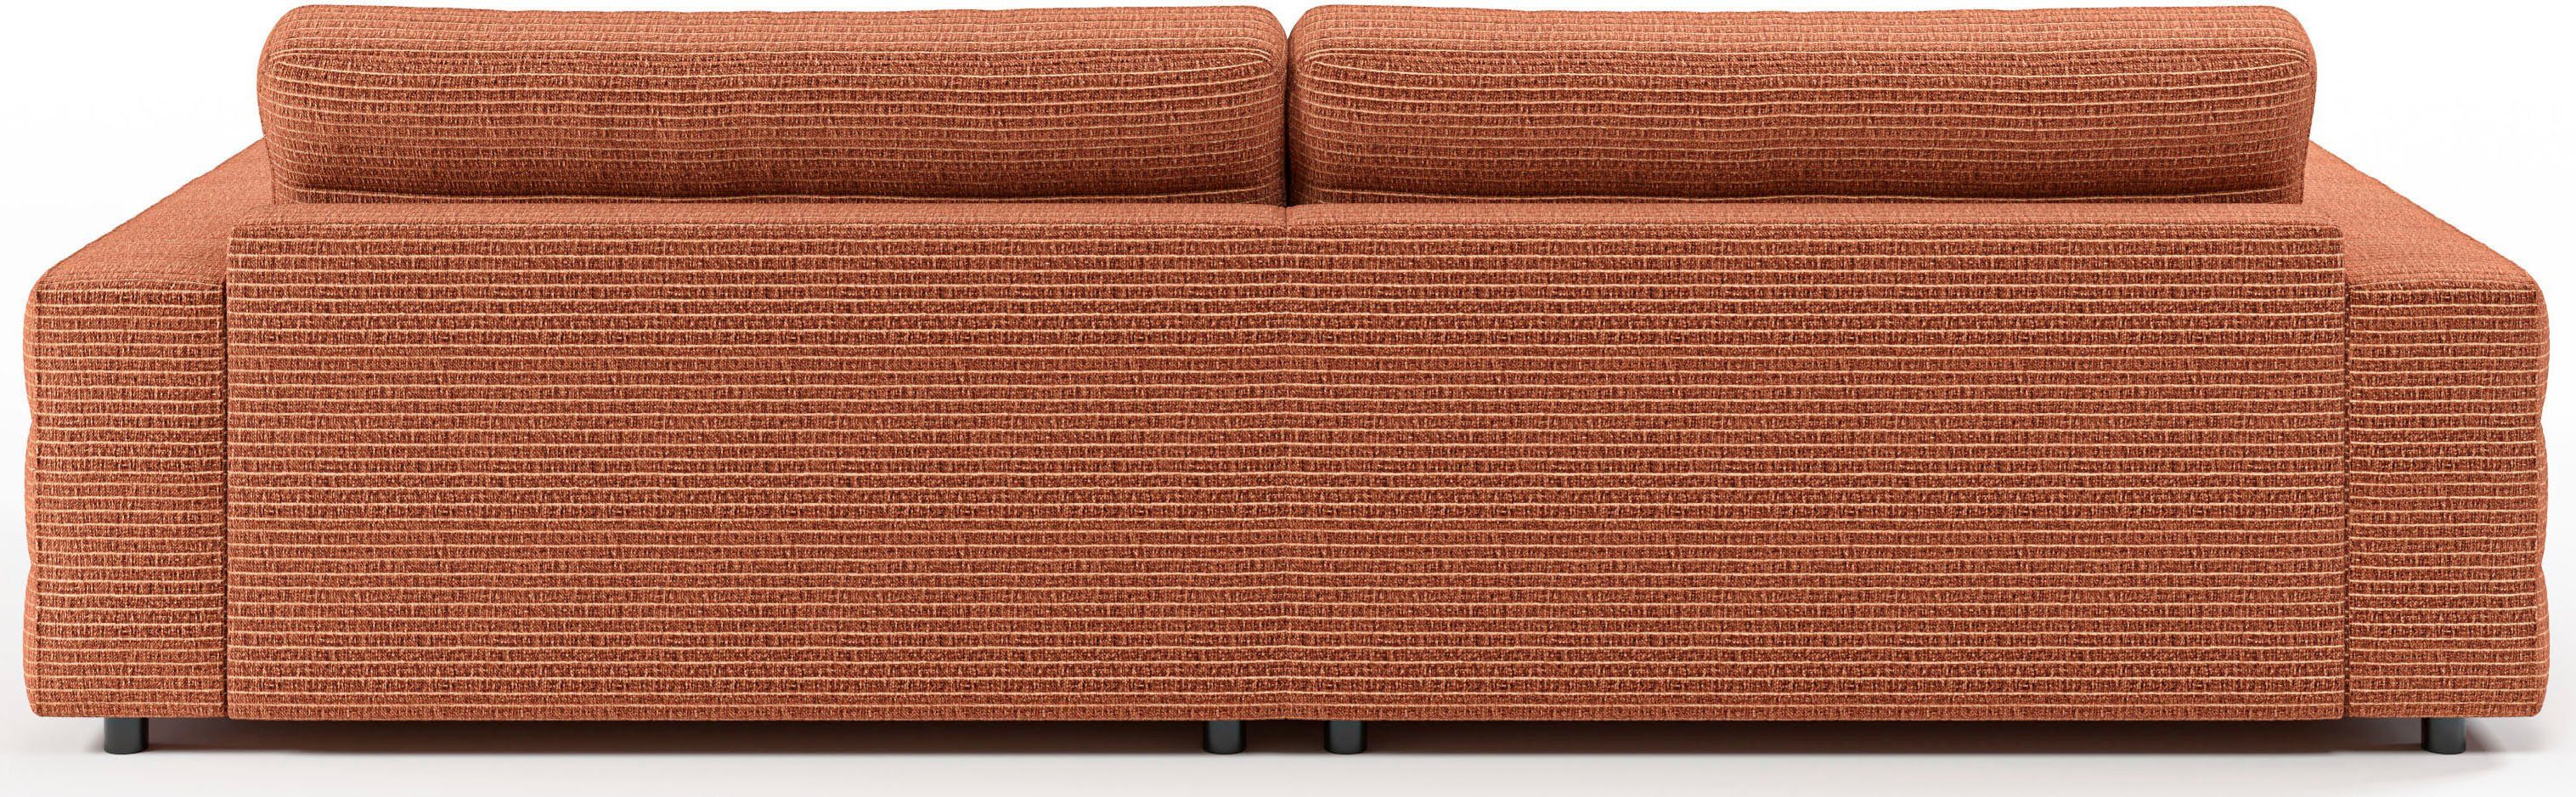 3C Candy Big-Sofa Quersteppung feiner mit Lose Stripes, rost Rückenkissen